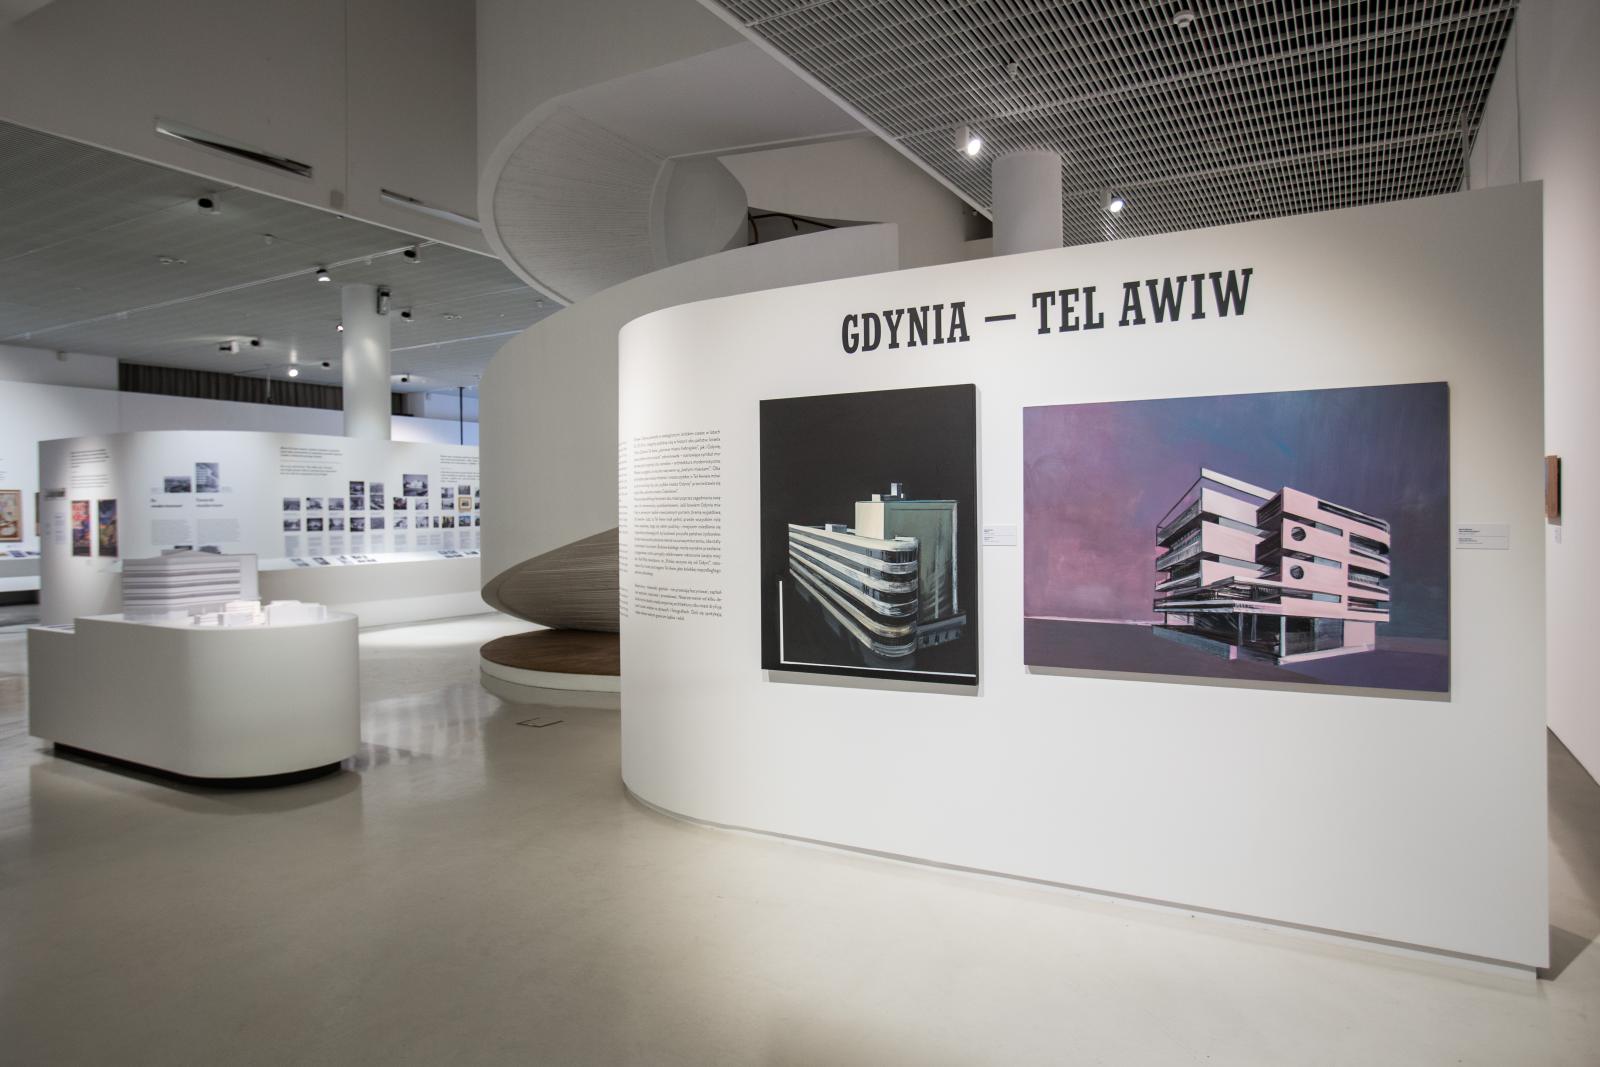 Wystawa czasowa "Gdynia - Tel Awiw" w Muzeum POLIN. Na zdjęciu dwa obrazy przedstawiające modernistyczne budynki wybudowane w Gdyni. Nad nimi napis - tytuł wystawy - Gdynia, Tel Awiw